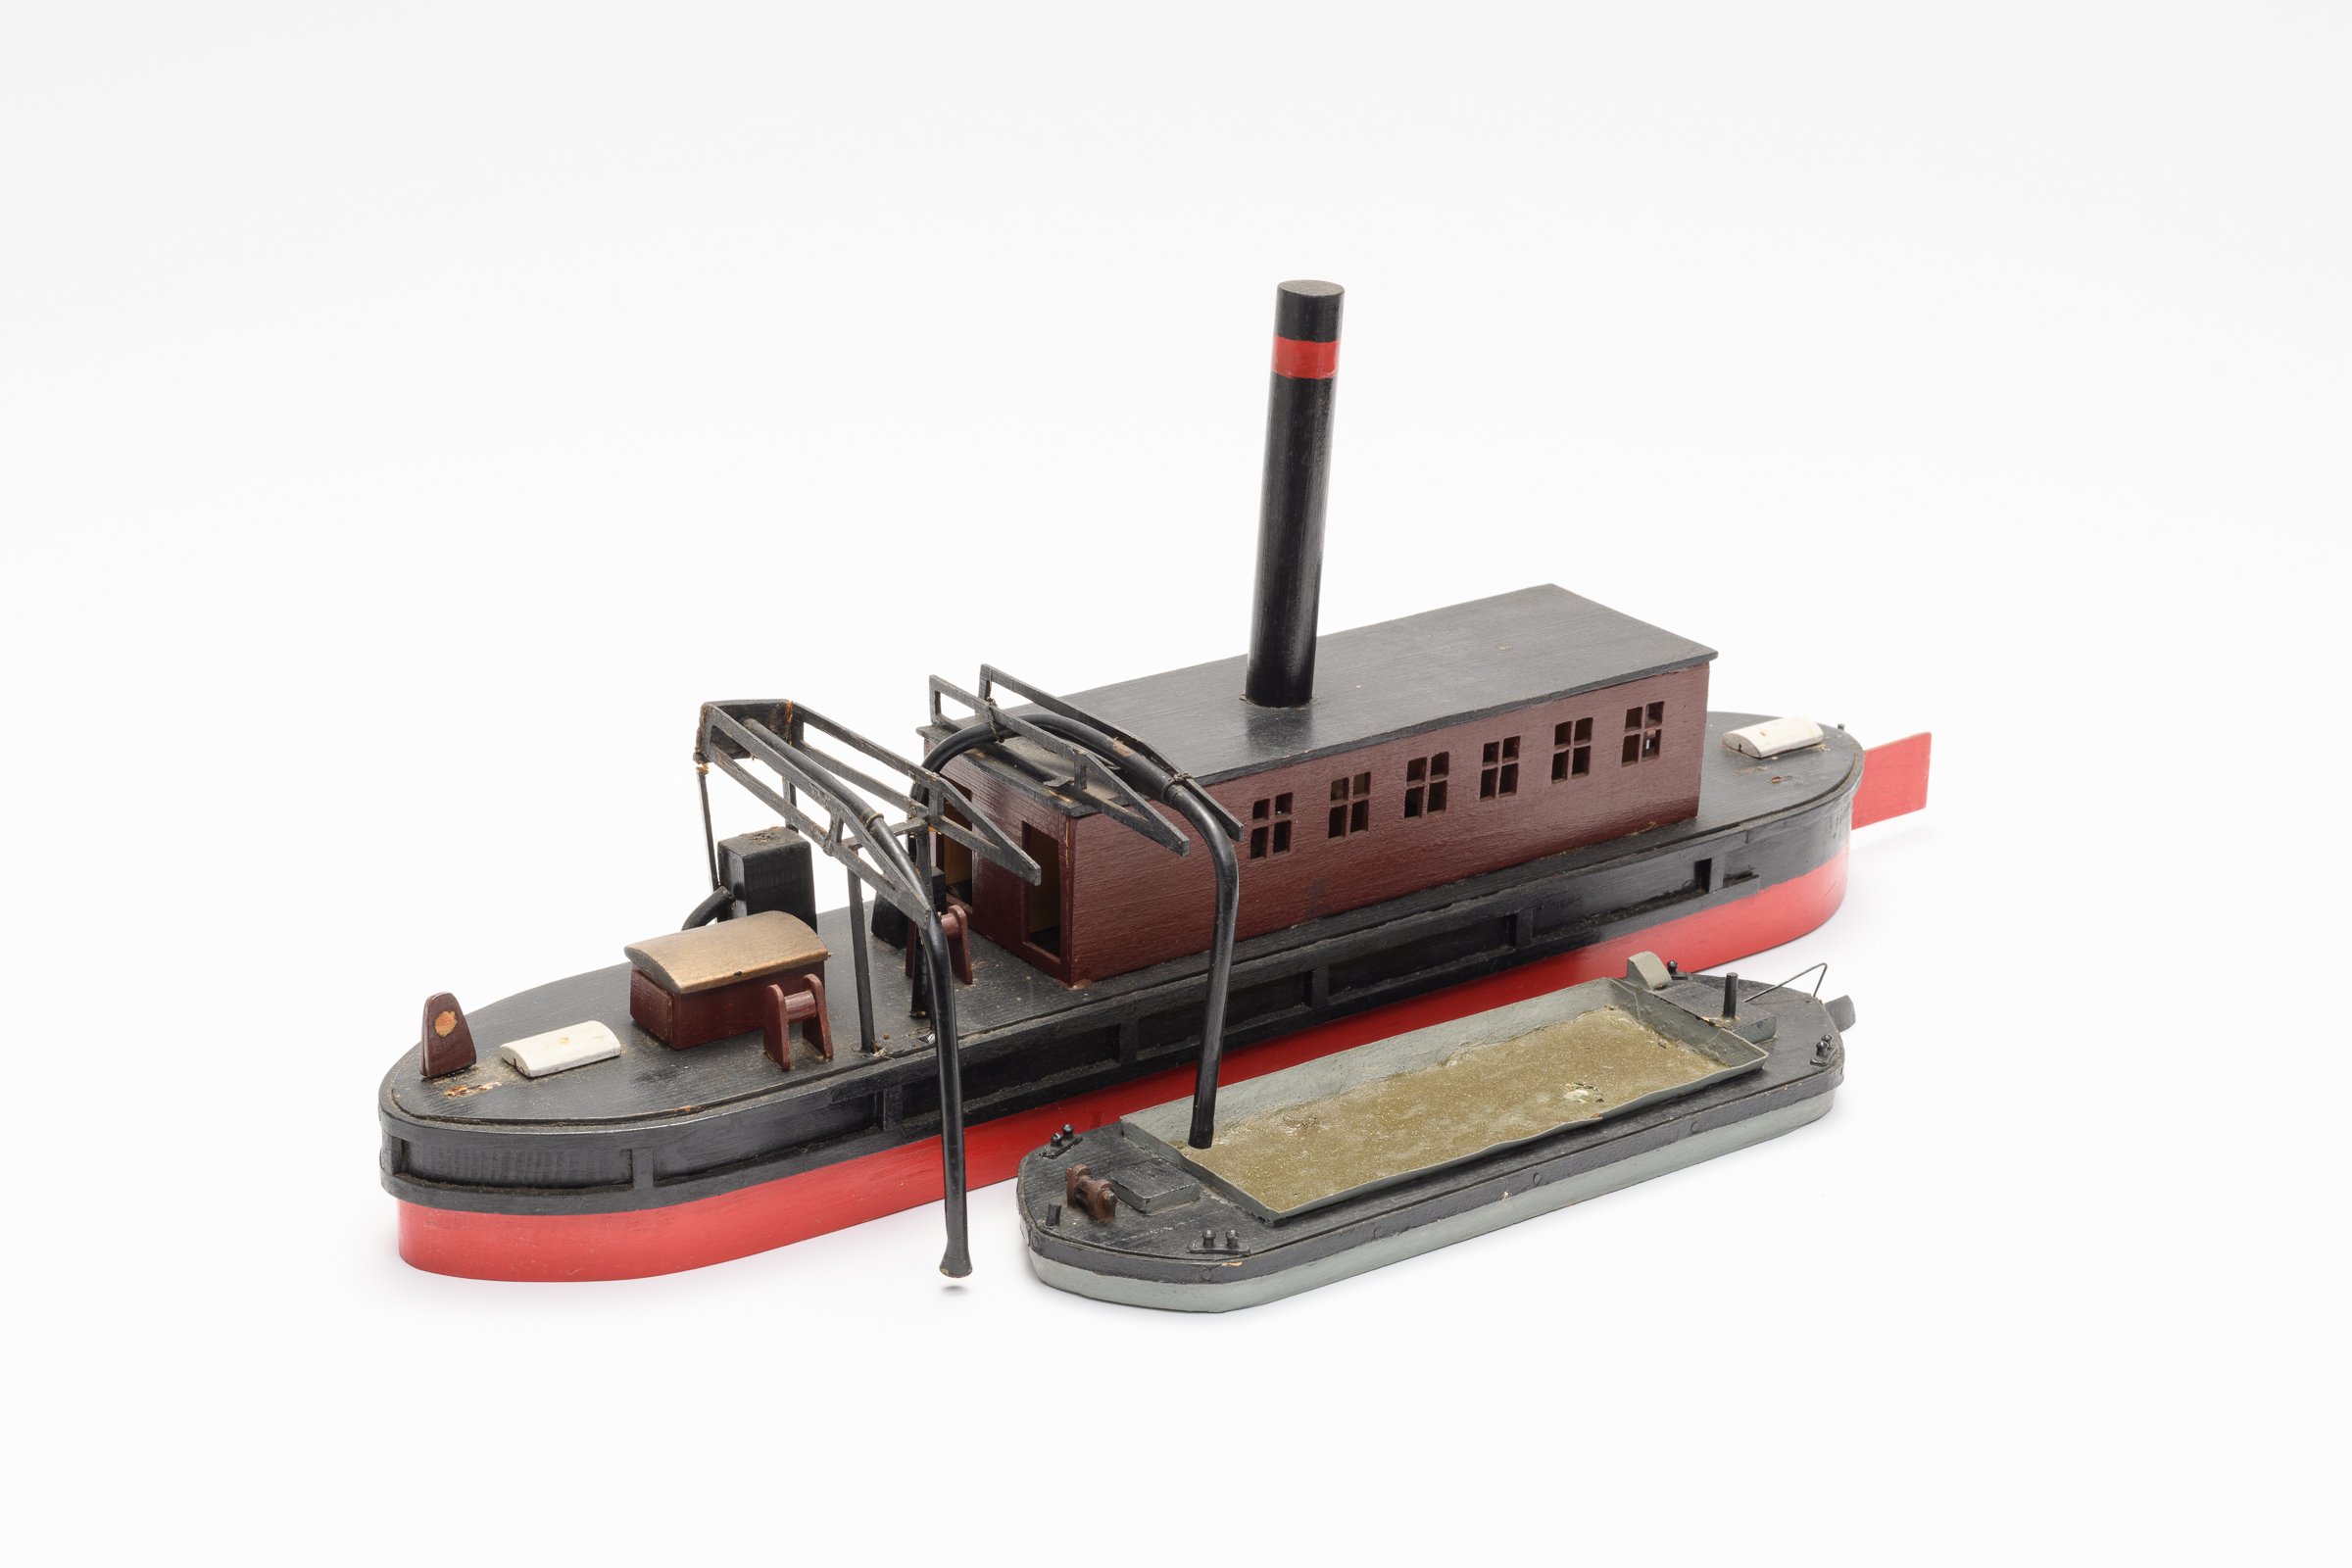 Modell einer Spülschute (Binnenschifffahrtsmuseum Oderberg CC BY-NC-SA)